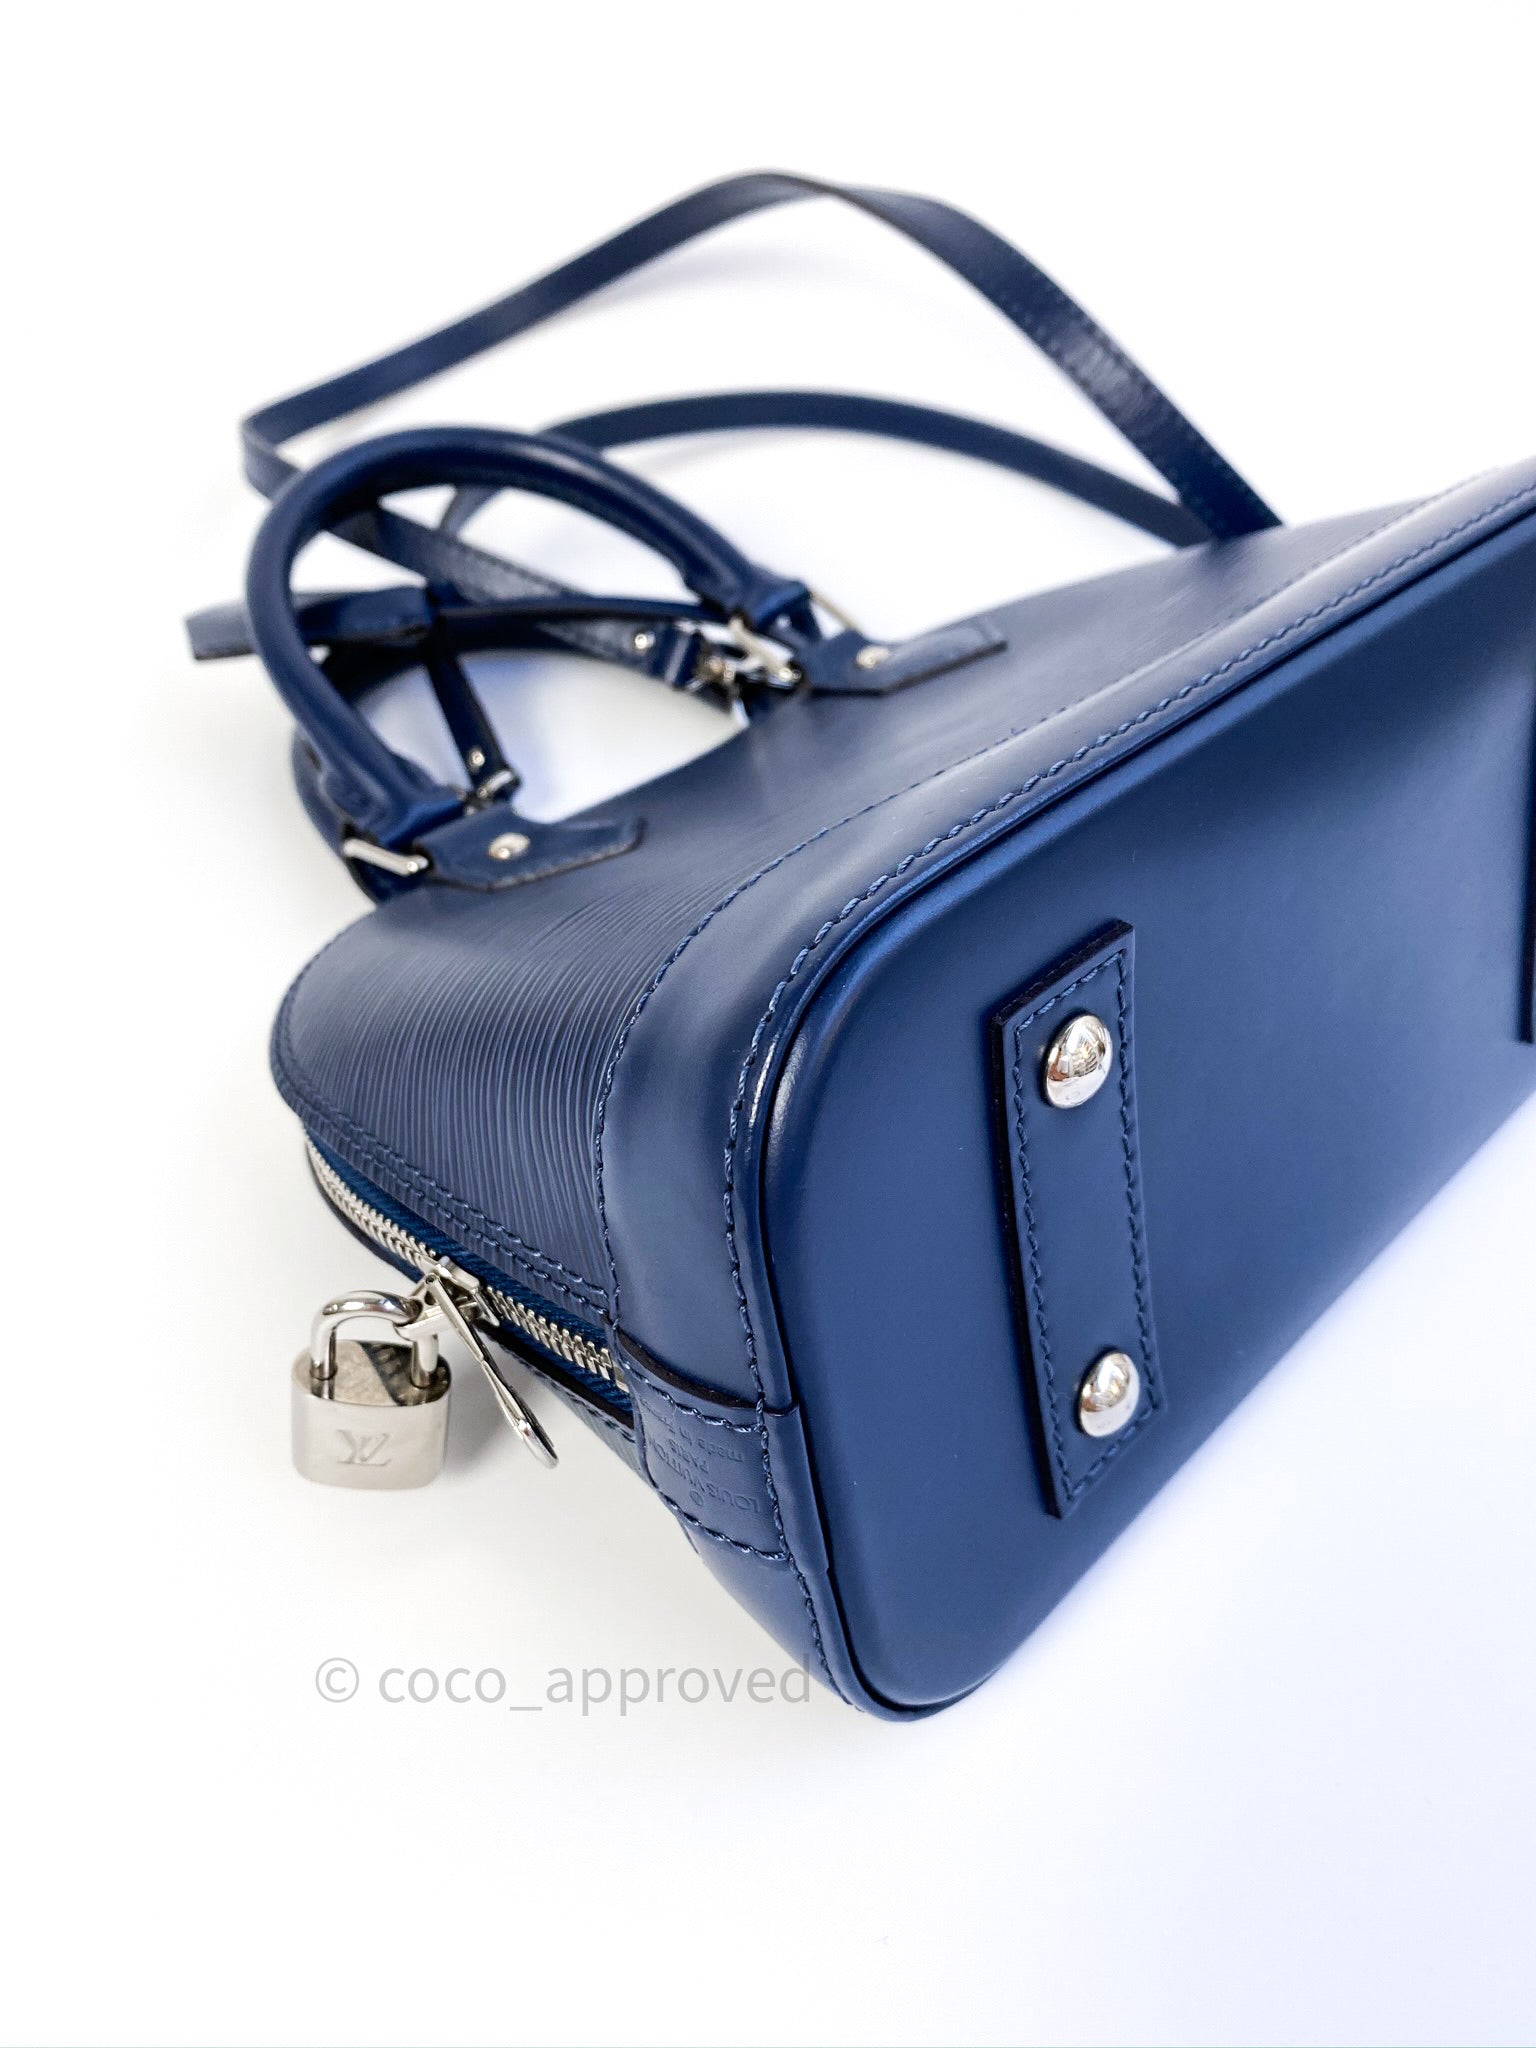 Louis Vuitton Handbag Alma BB New in Box Paris Shopping Bag Box